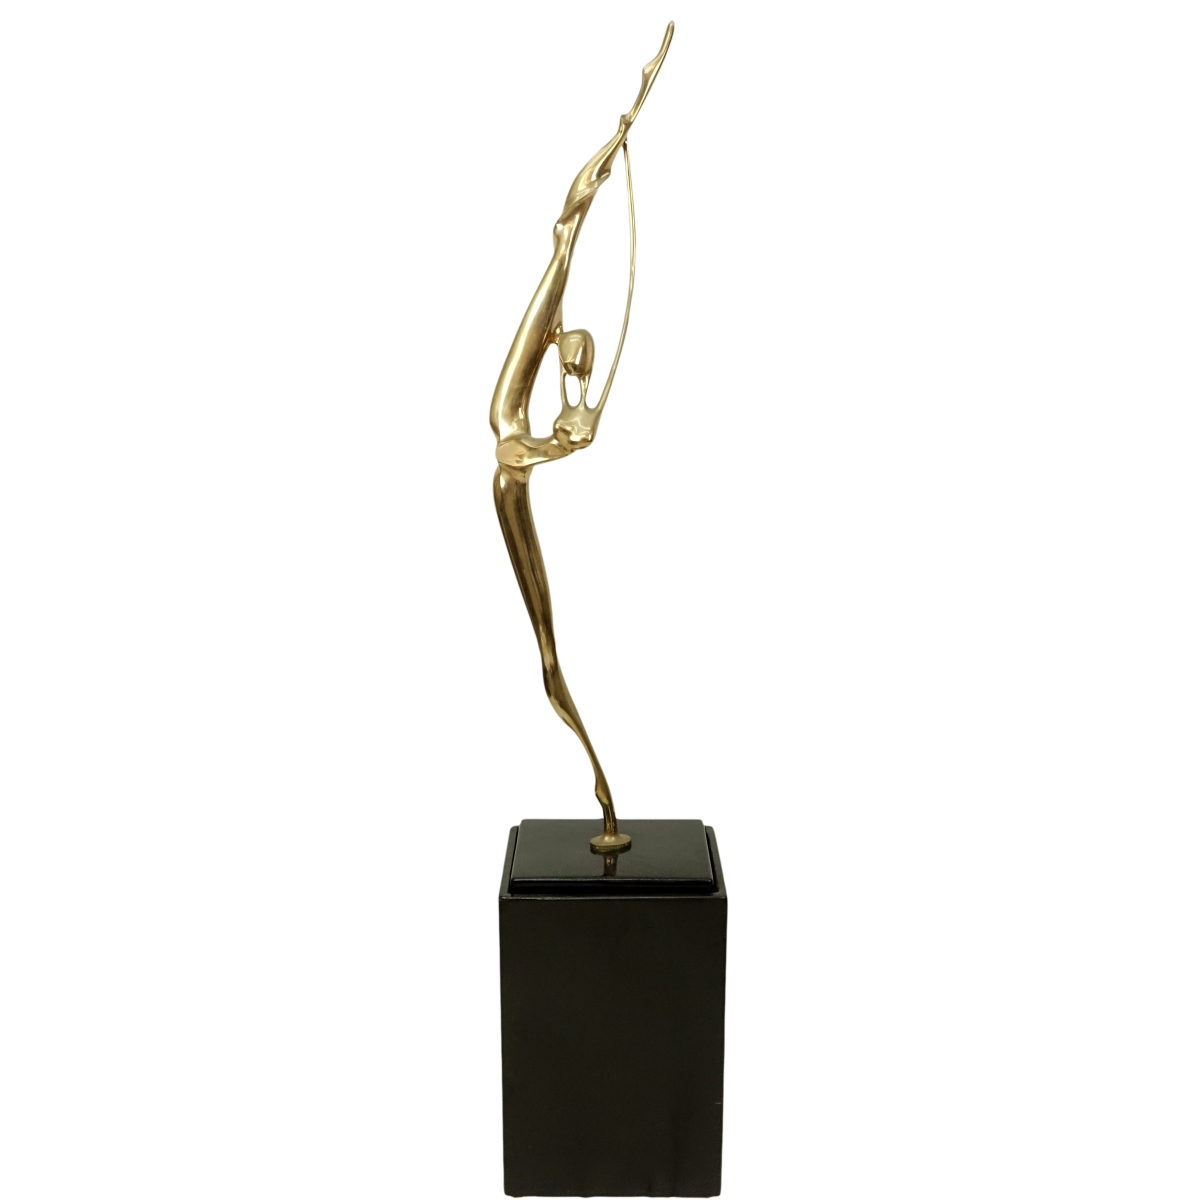 Georges Charpentier (born 1937) Bronze Sculpture